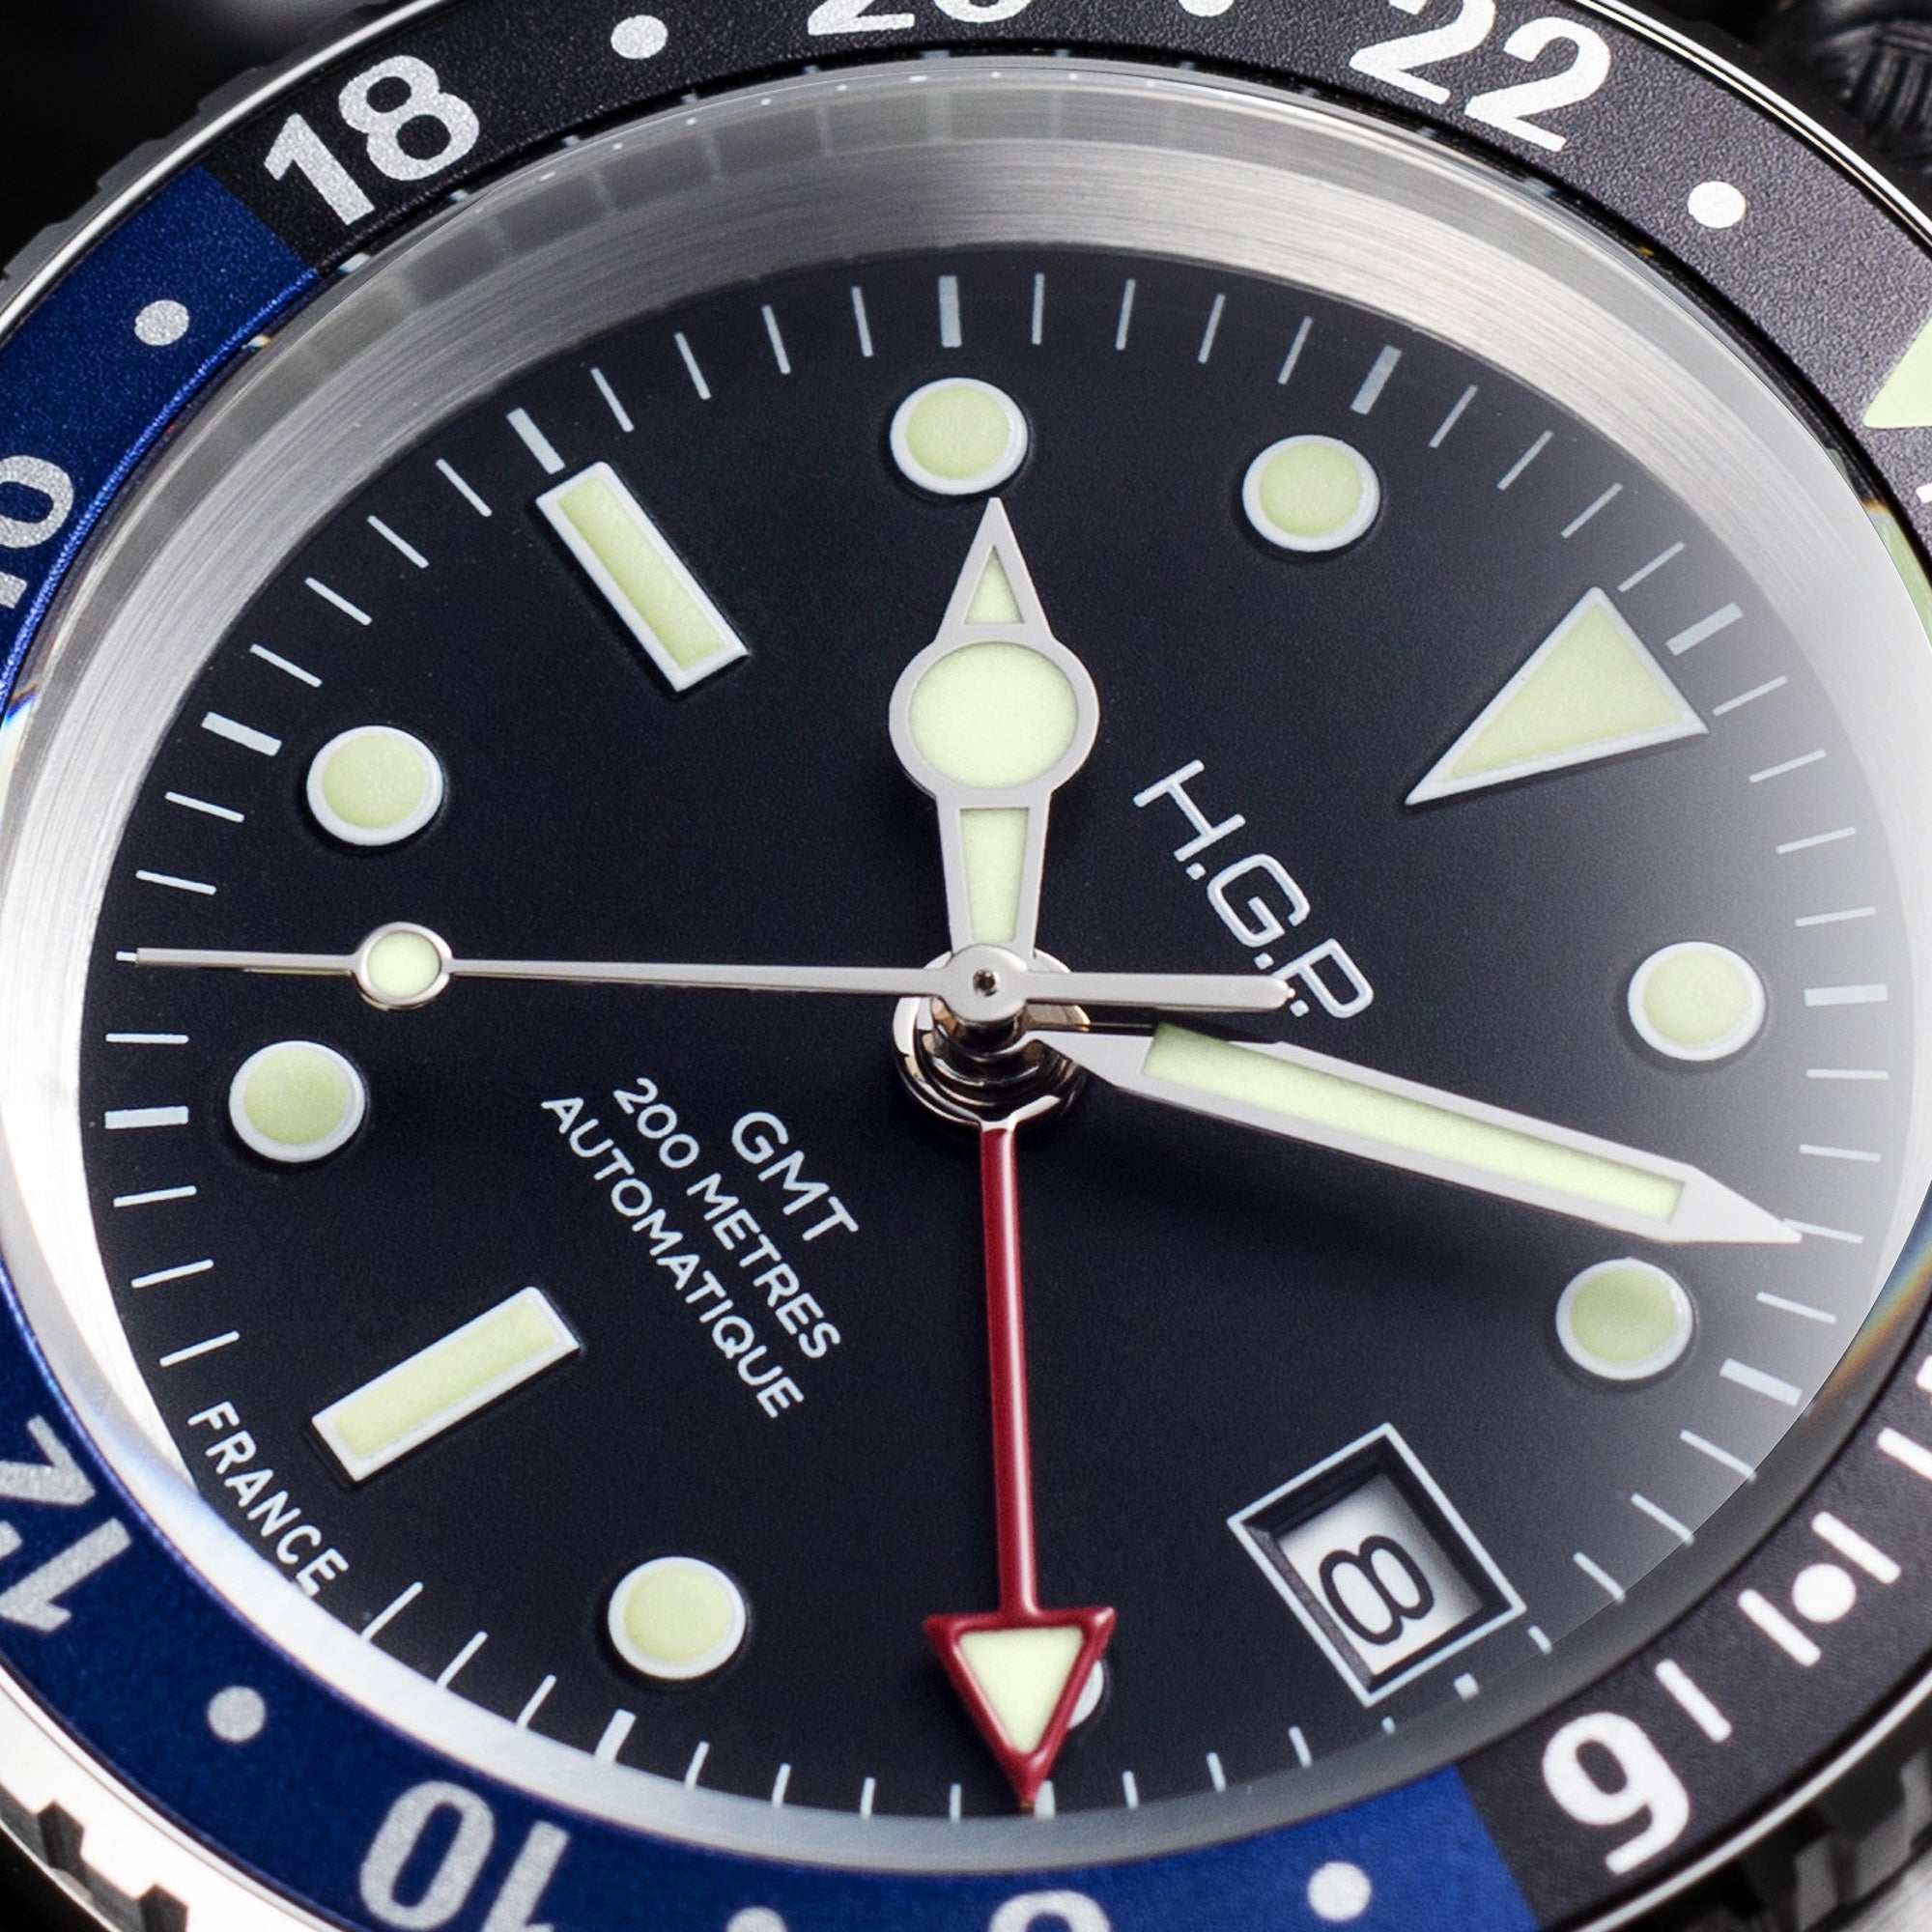 Montre de plongée bracelet automatique Diver GMT 200M - Noir & bleu 